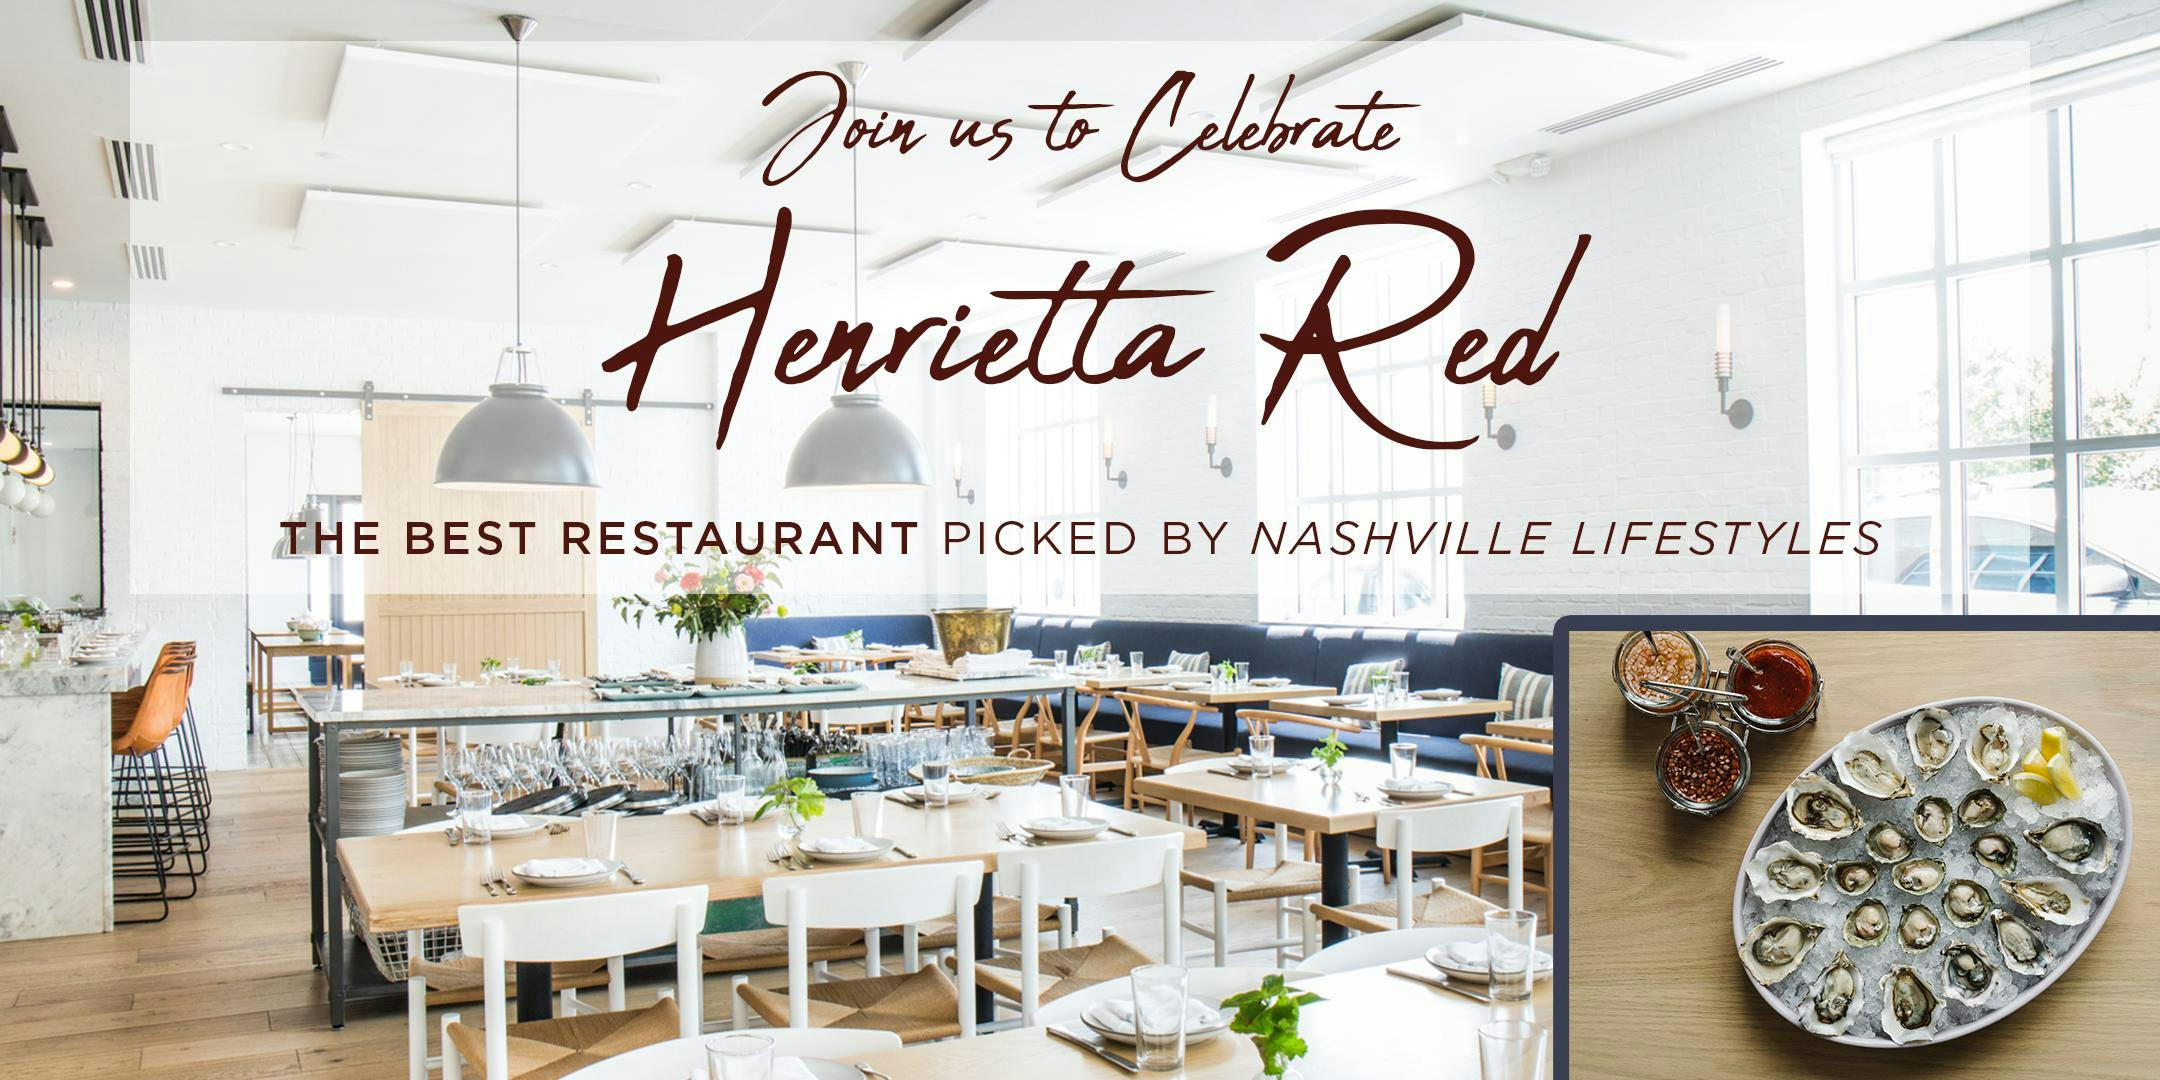 Nashville Lifestyles Celebrates The Best Restaurant: Henrietta Red